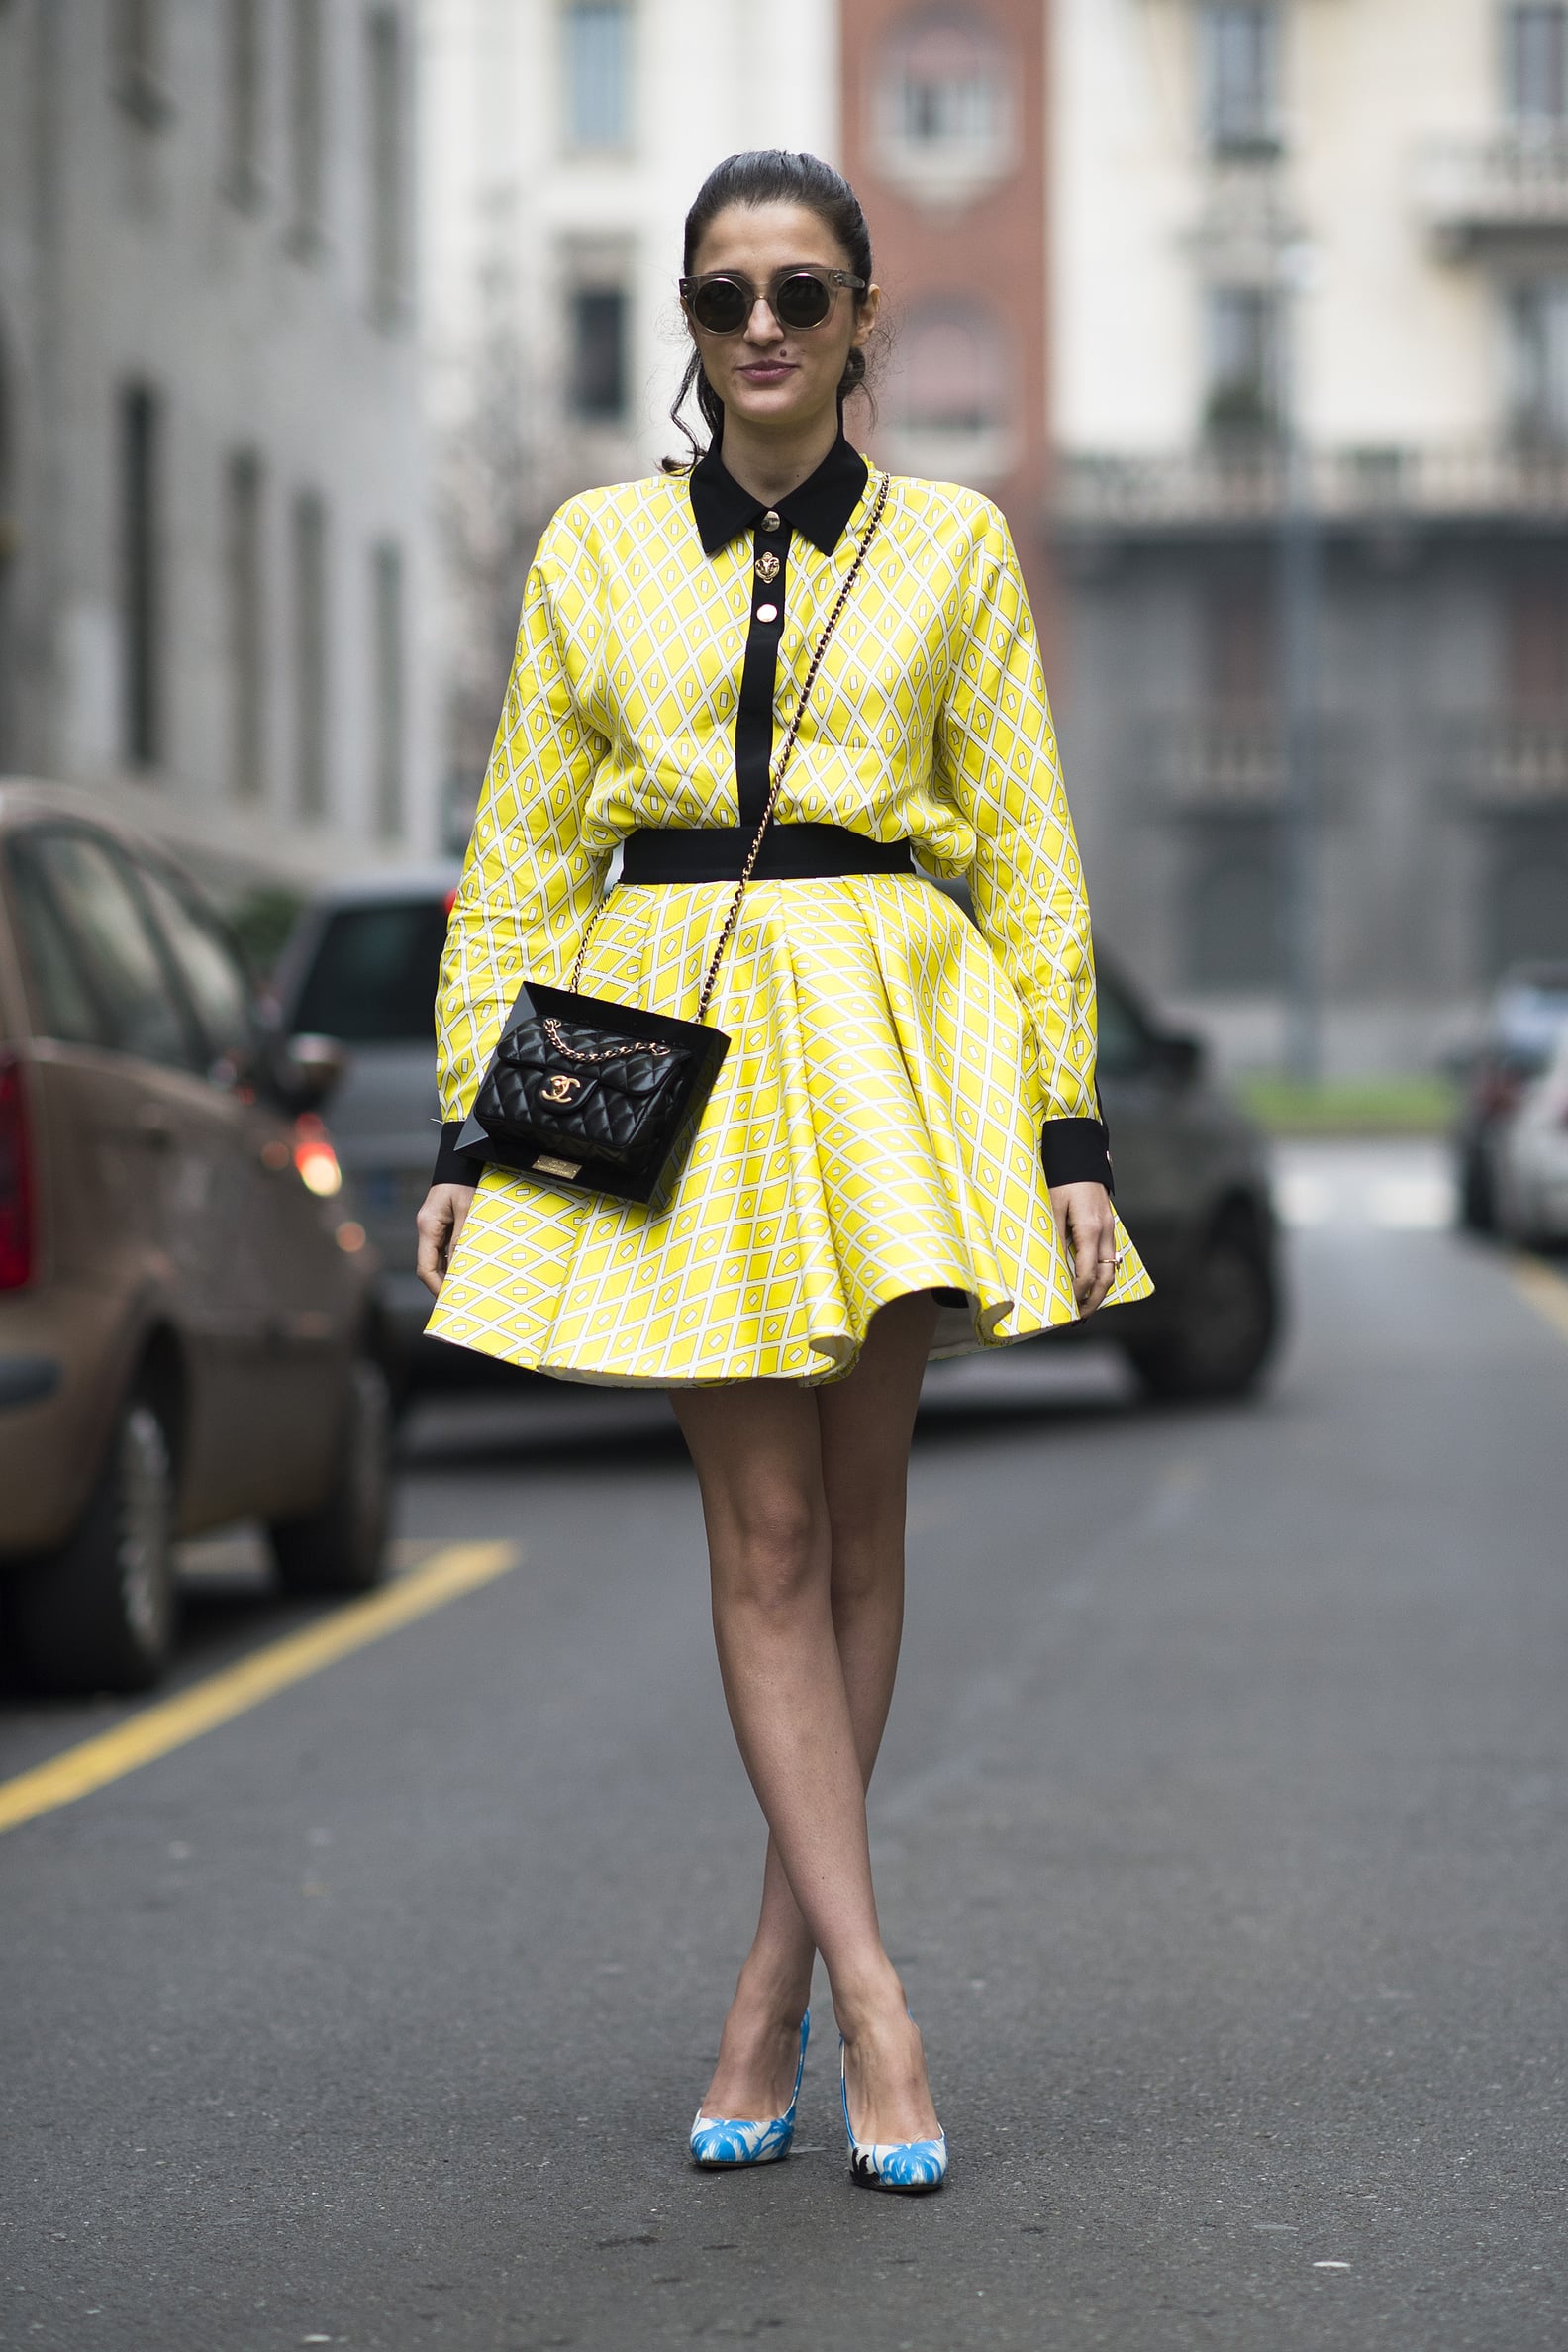 Street Style at Menswear Fashion Week 2014 | POPSUGAR Fashion